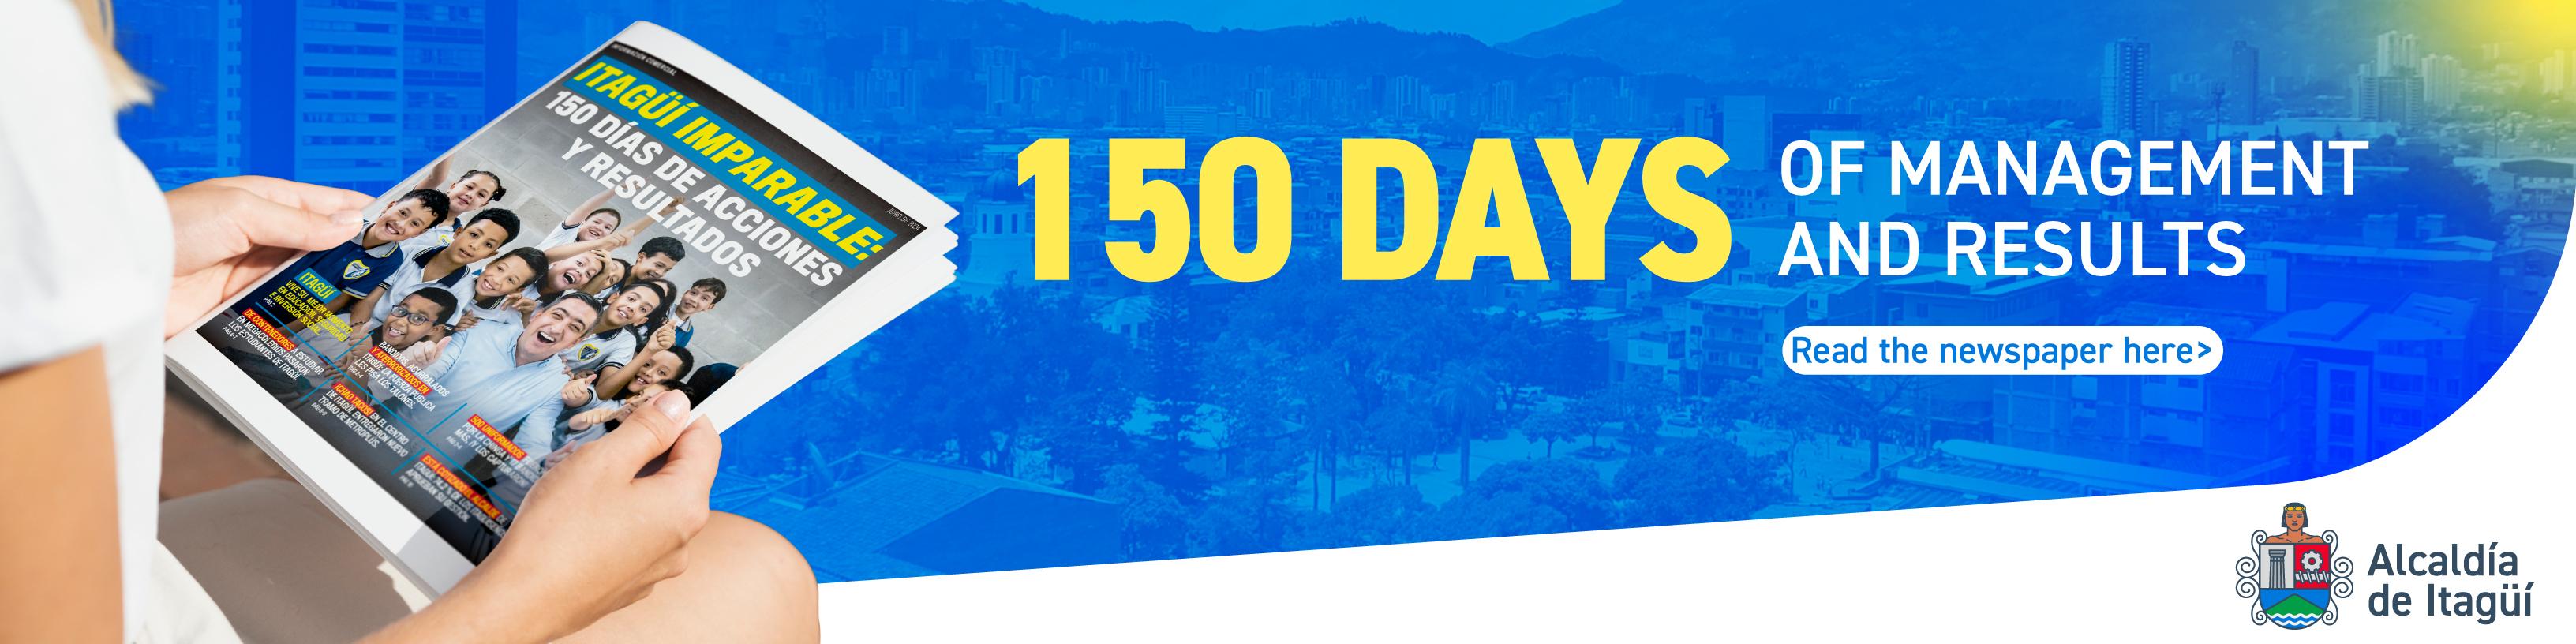 150 días de acciones y resultados